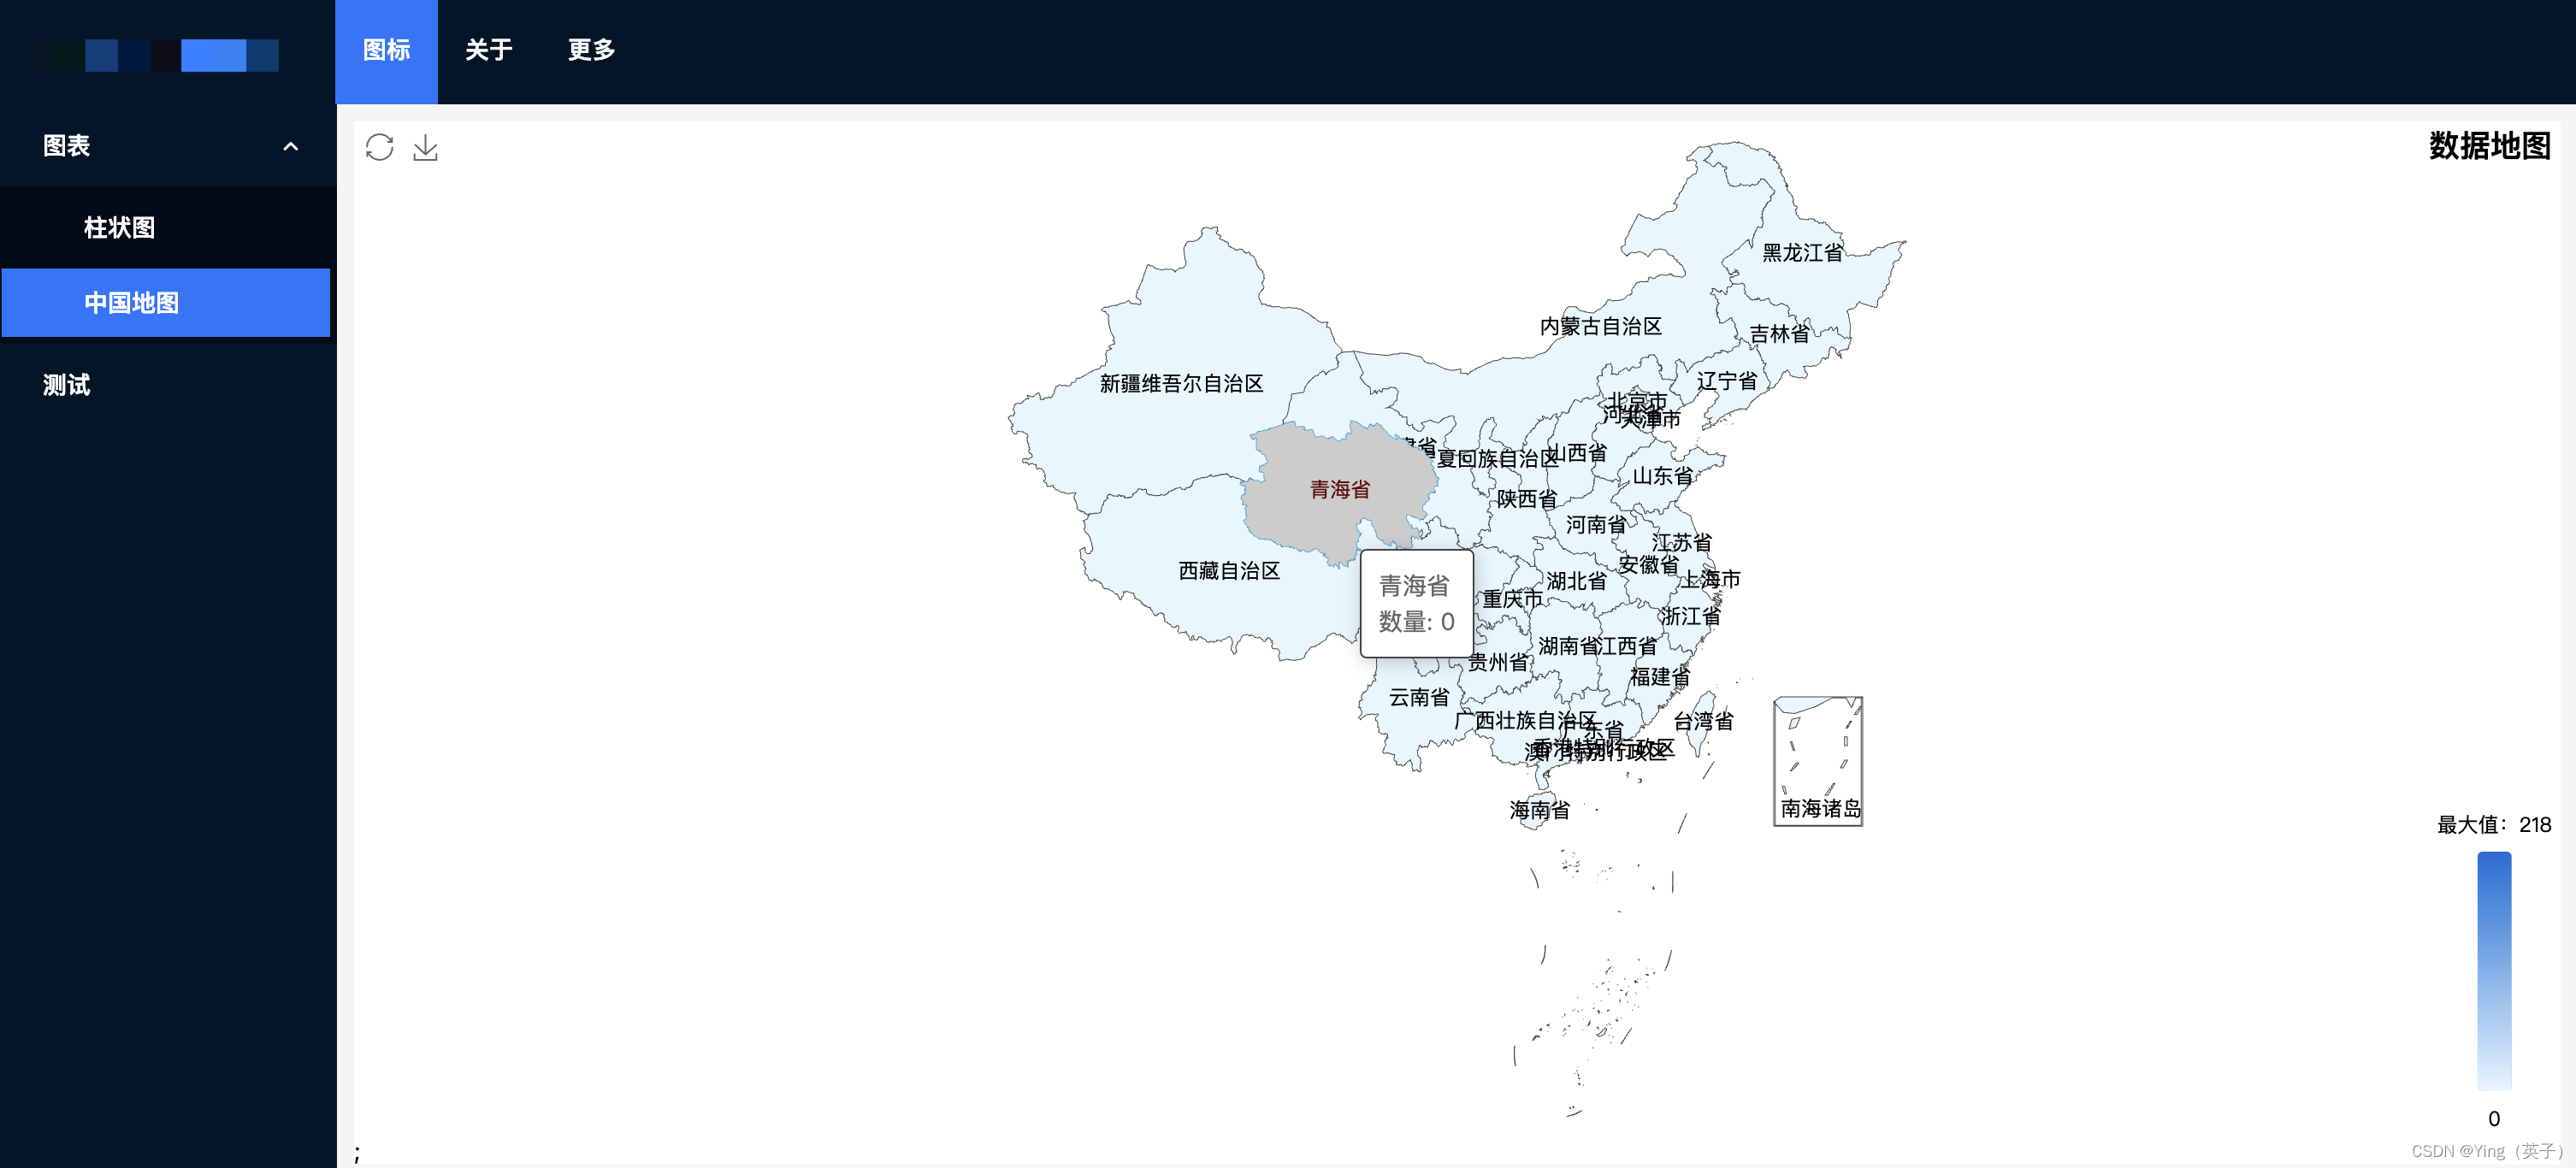 在react项目用echarts绘制中国地图